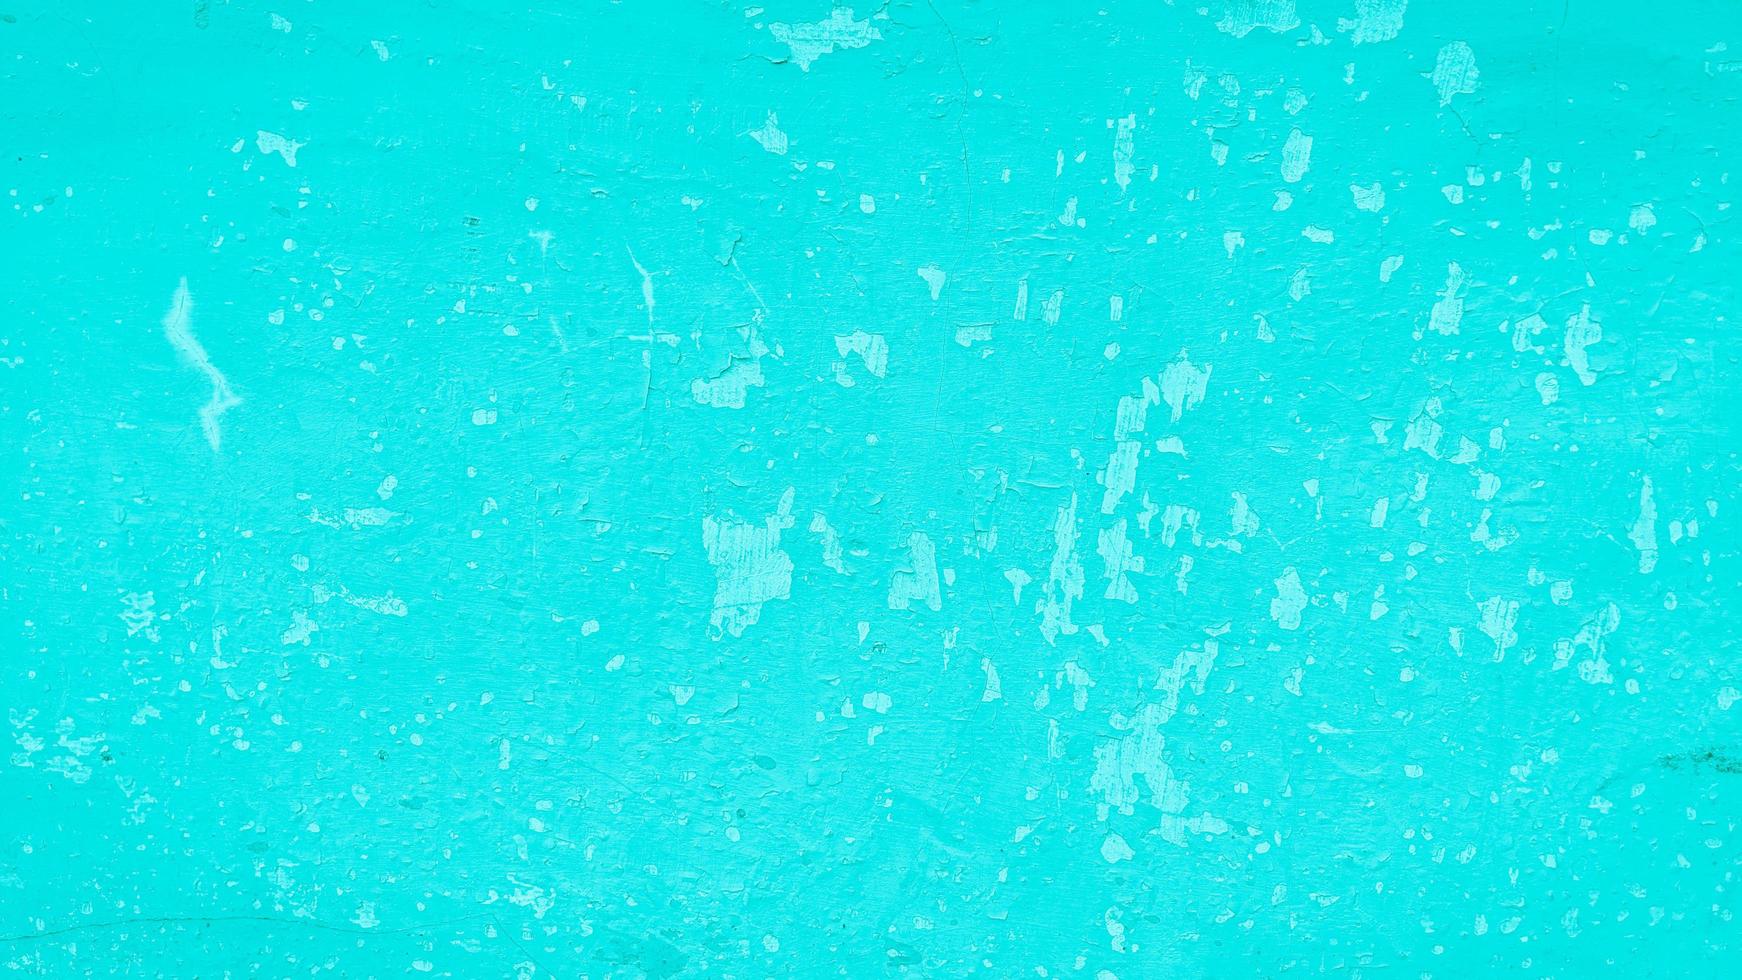 Texturhintergrund der blaugrünen Wand foto